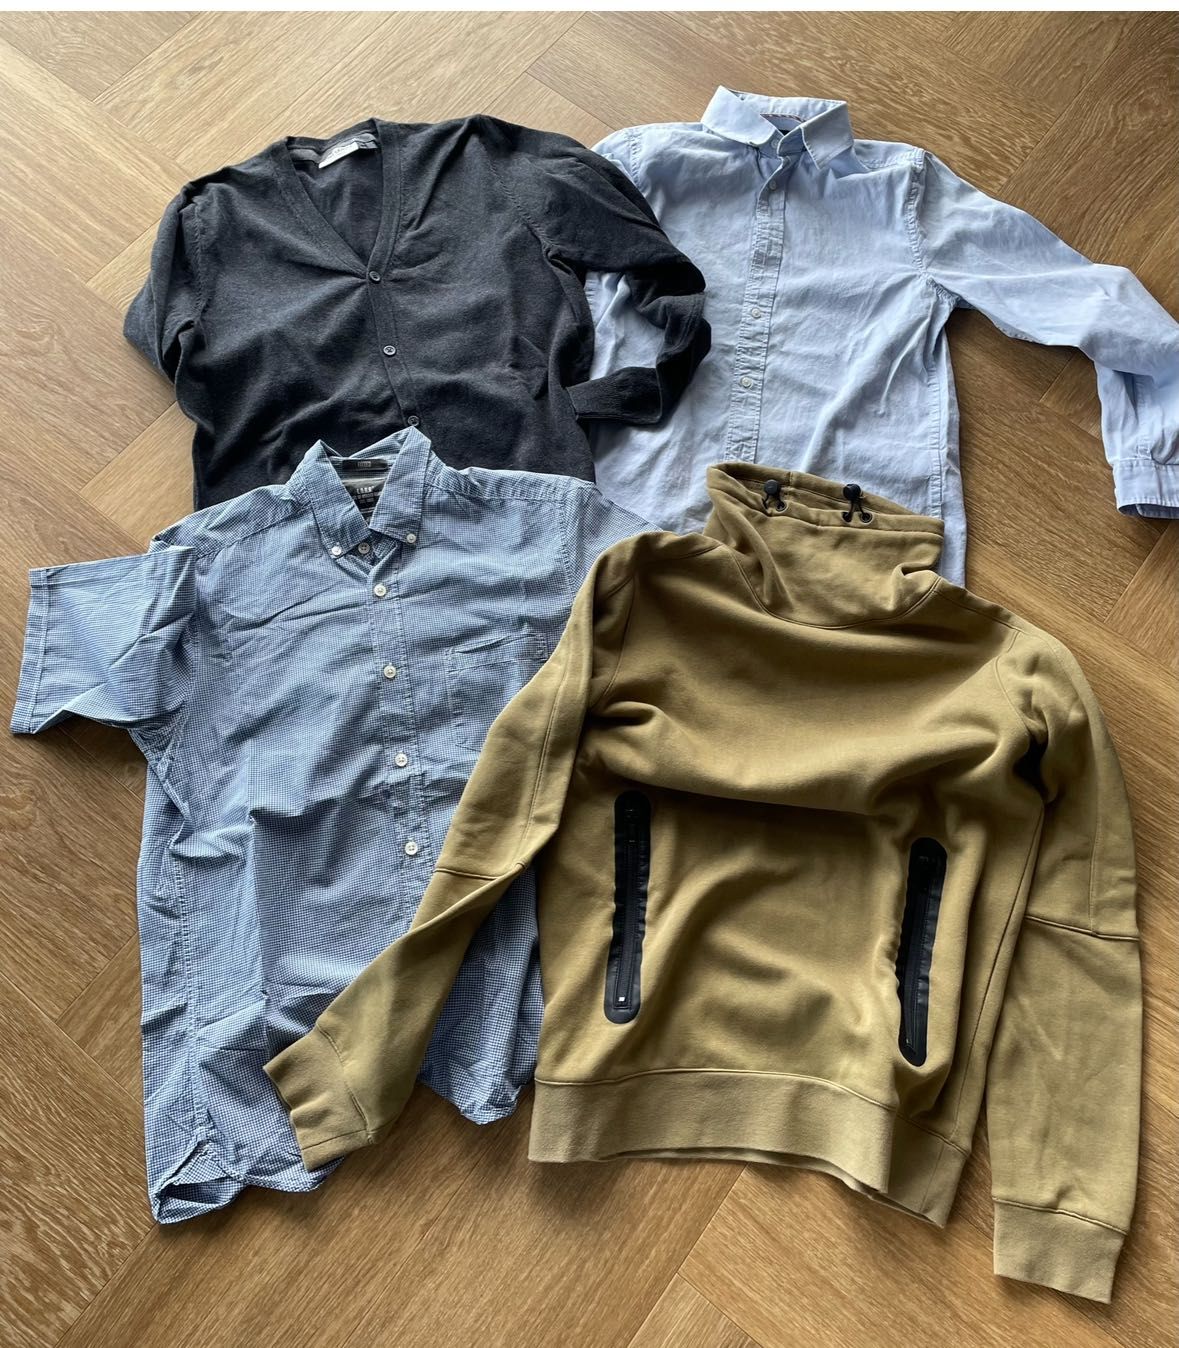 Zestaw ubrań męskich S koszula bluza H&M kardigan